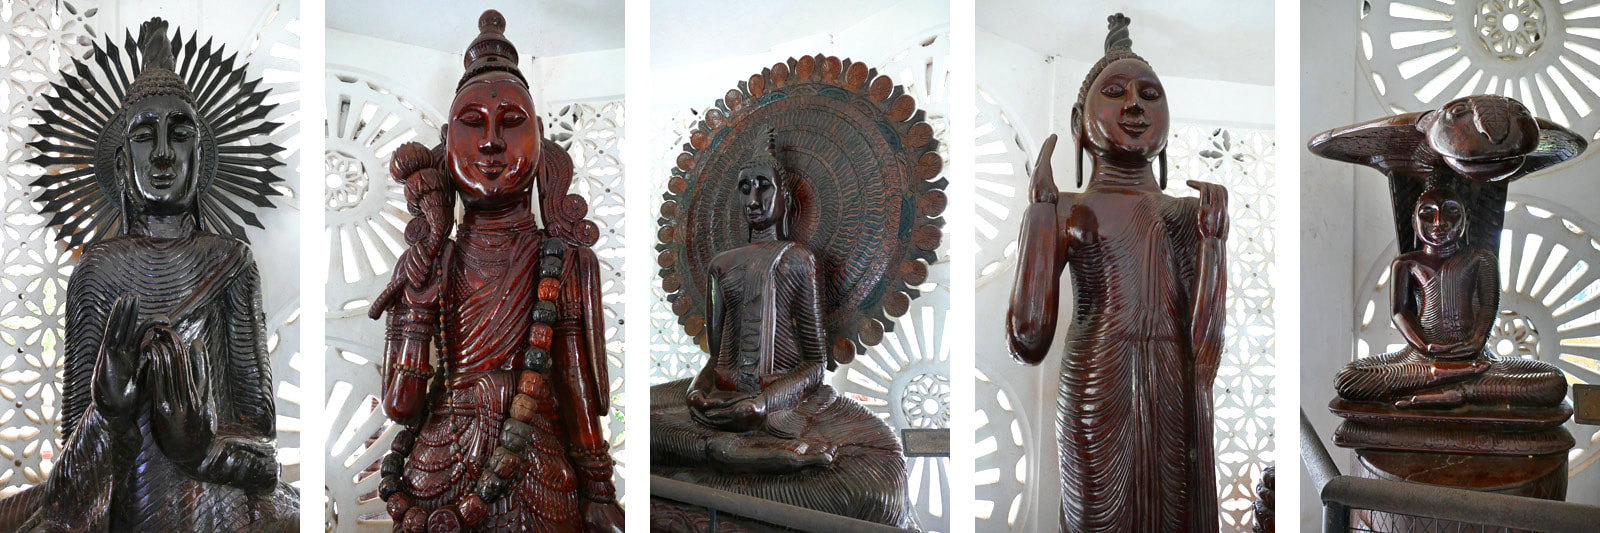 donated Buddha sculpturs in museum of Dimbulagala Raja Maha Viharaya